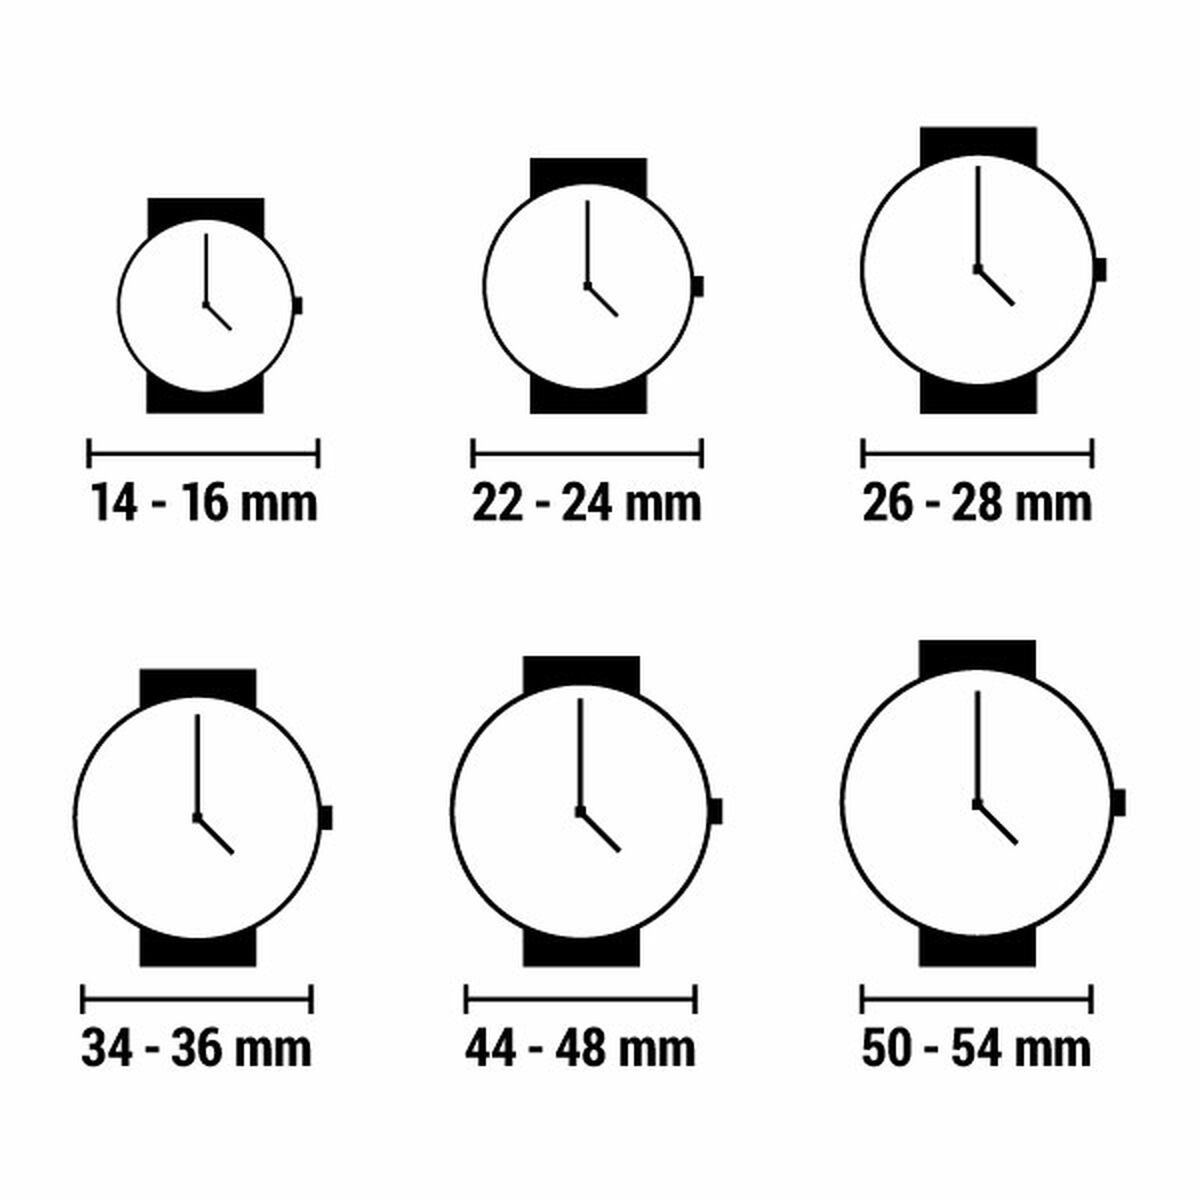 Horloge Dames Esprit ES1L065M0095